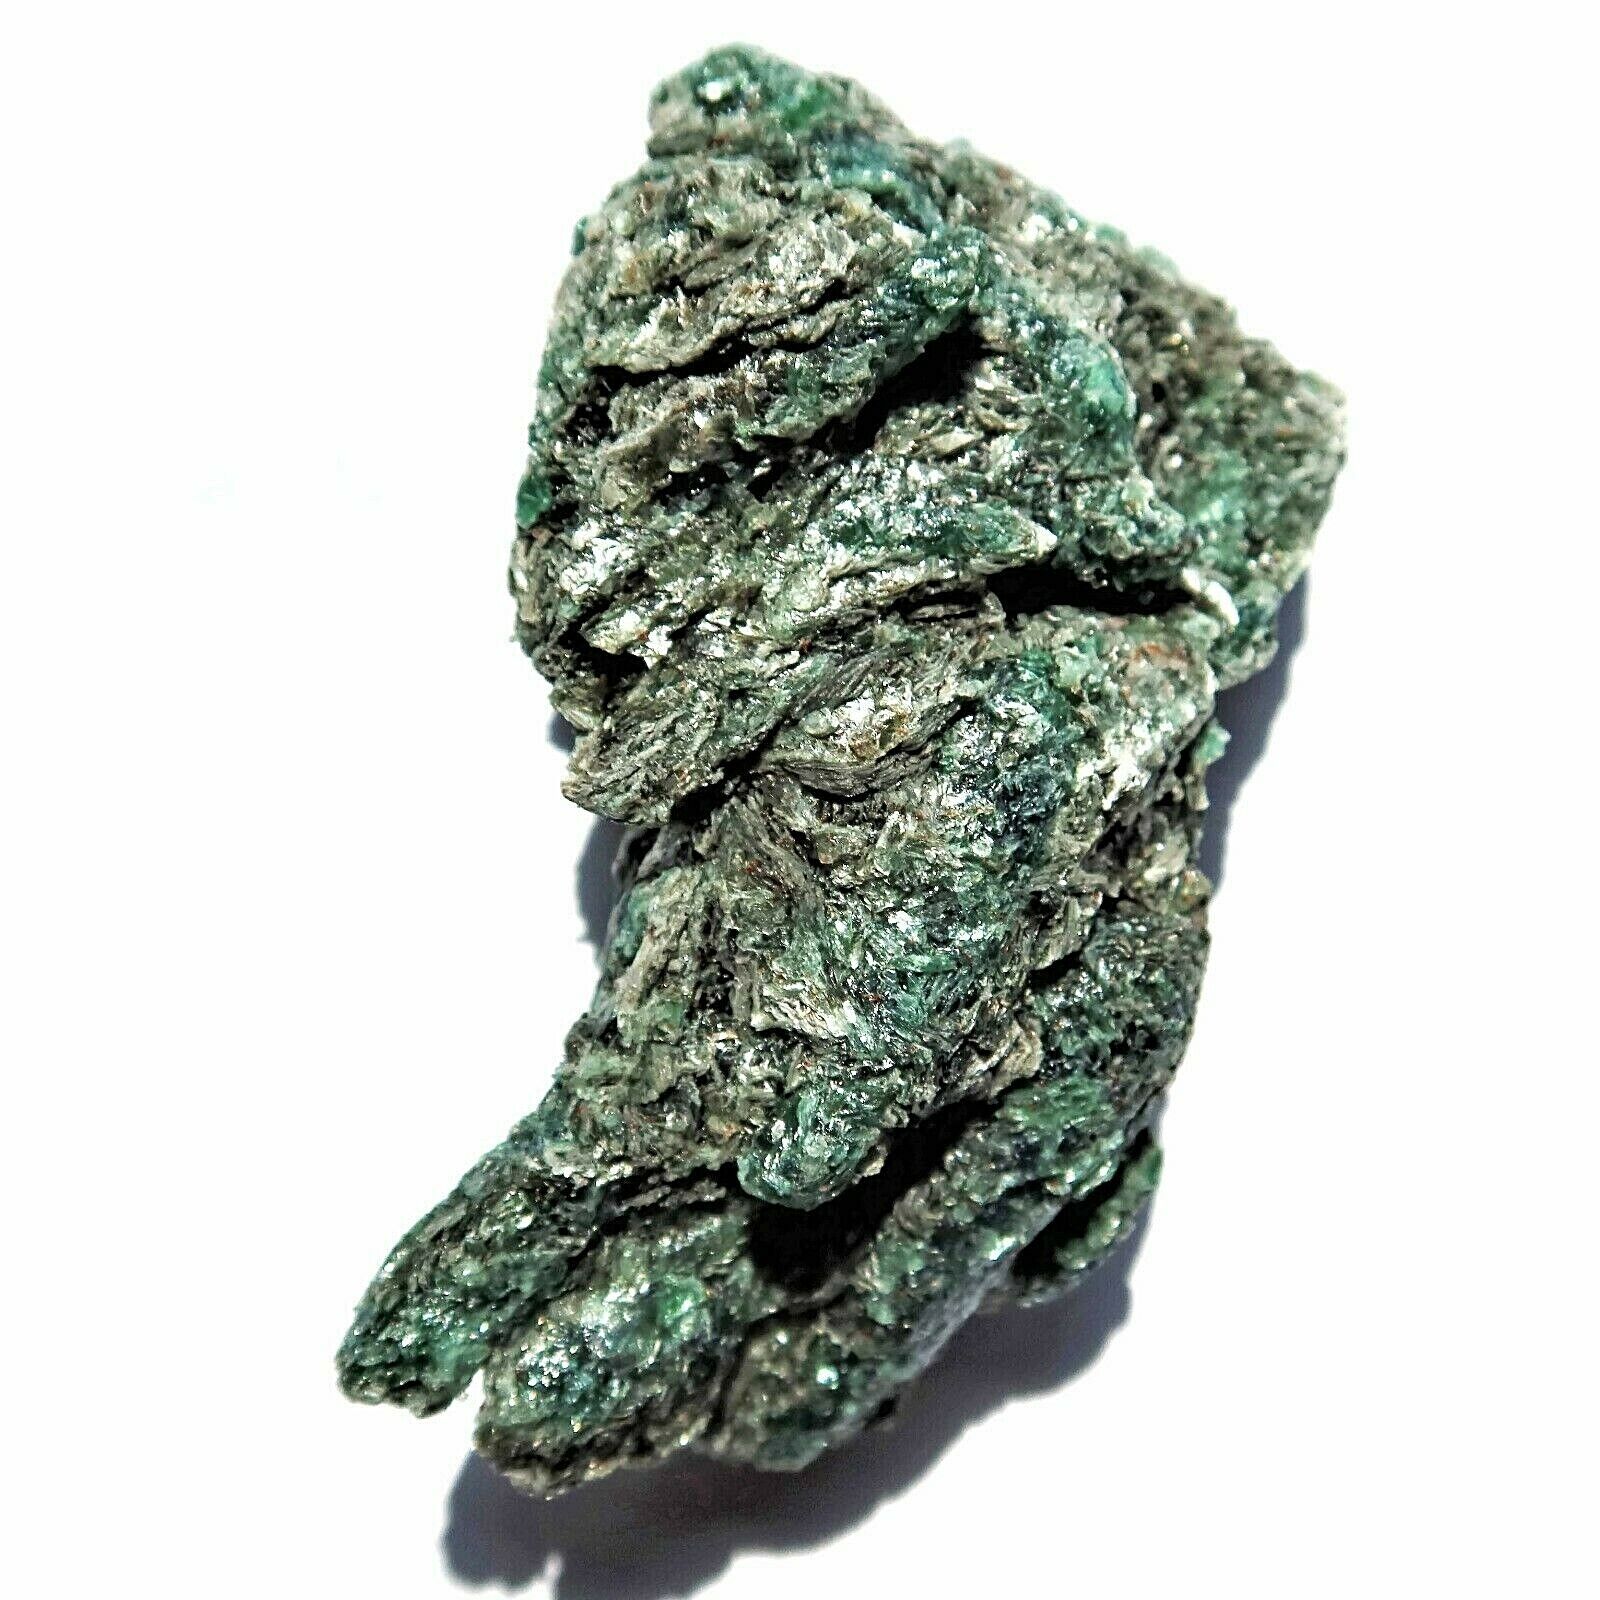 Rare Emeralds in Mica Schist Zimbabwe EM4